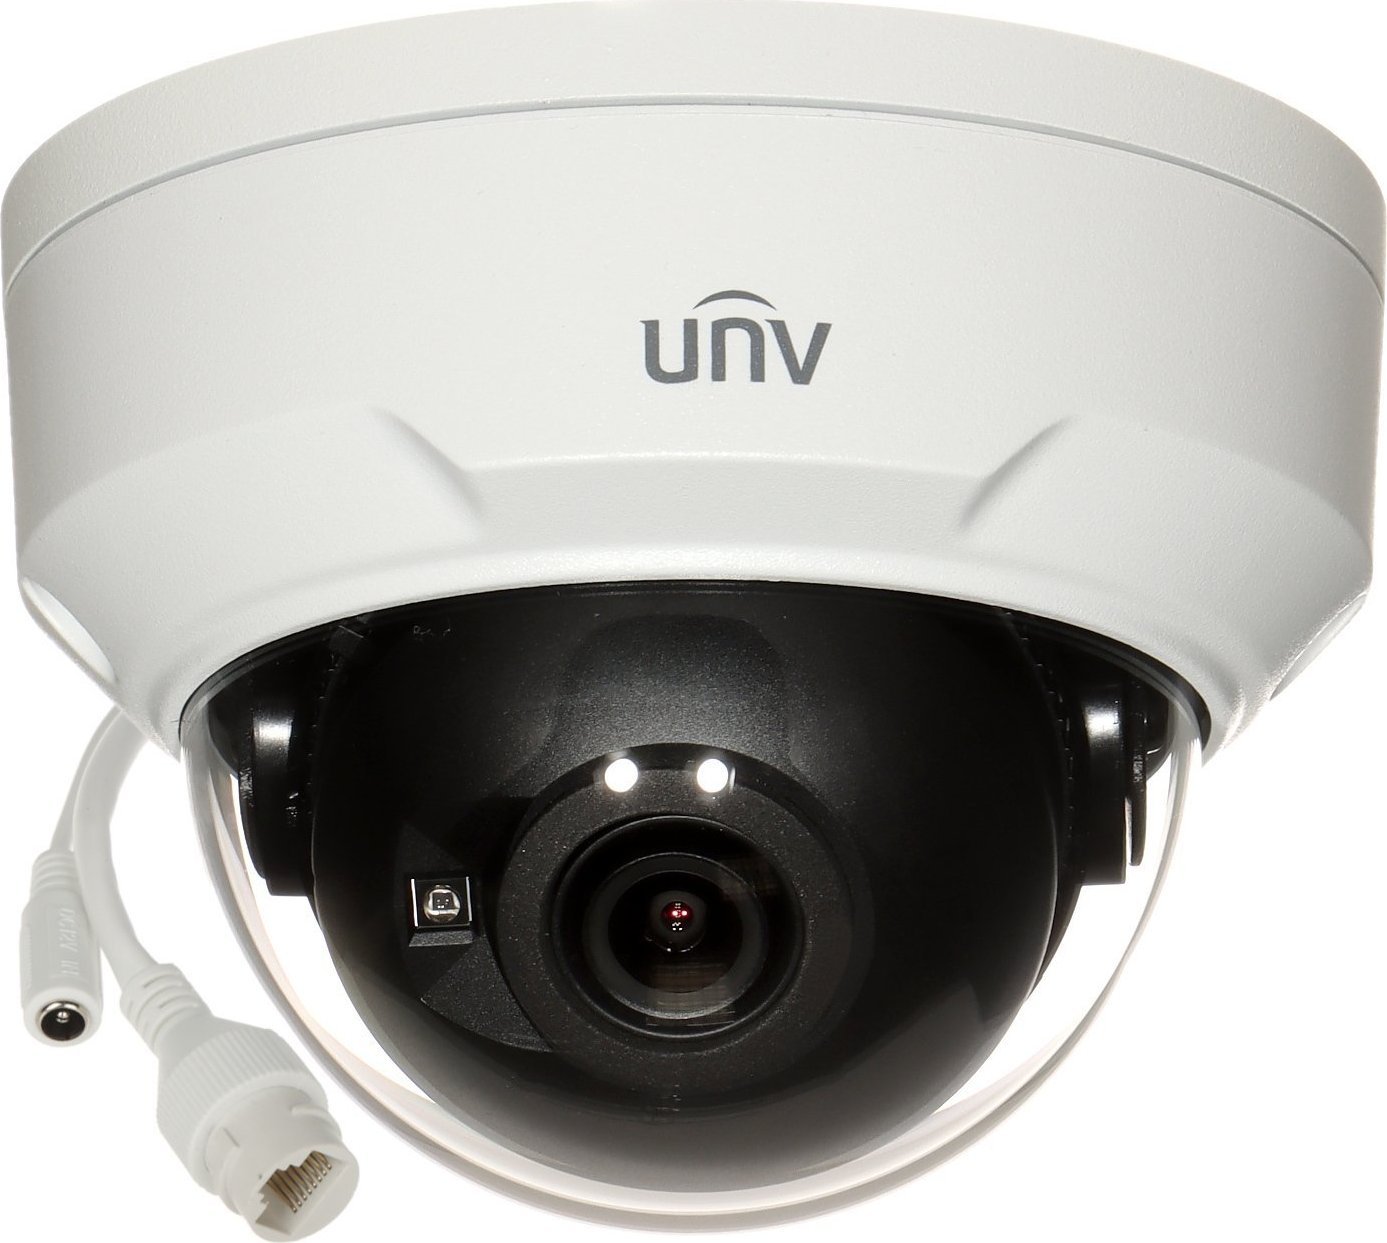 Kamera IP Uniview KAMERA WANDALOODPORNA IP IPC324LE-DSF28K-G - 4 Mpx 2.8 mm UNIVIEW novērošanas kamera